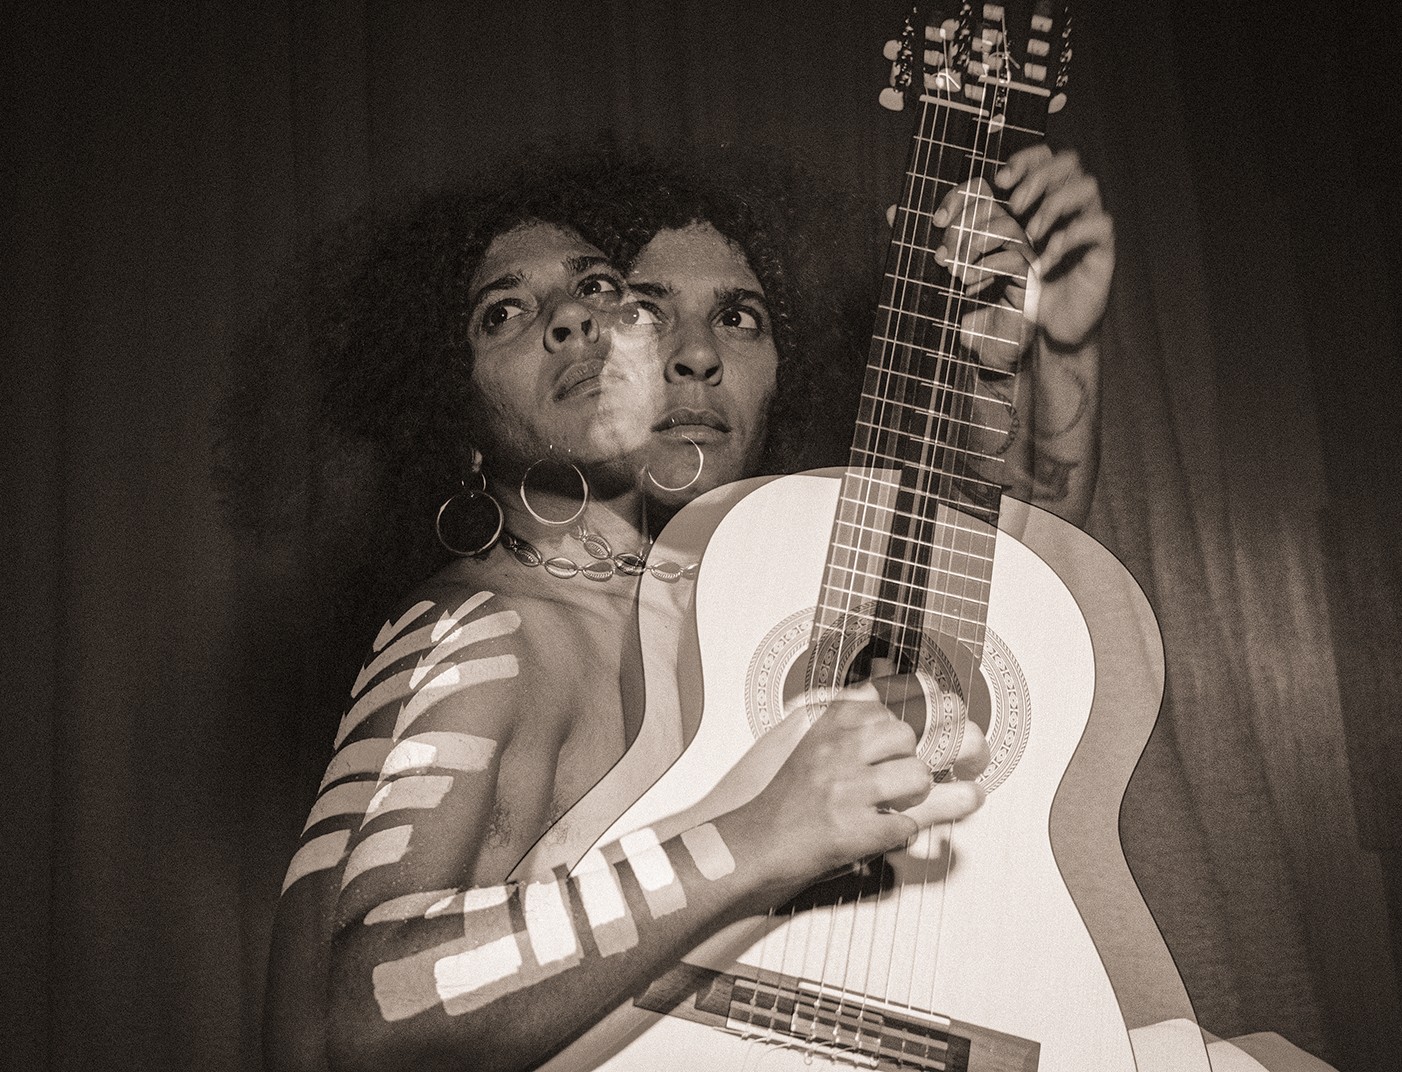 Josyara realça e expande sentidos do repertório da Timbalada com voz e violão no EP ‘Mandinga multiplicação’